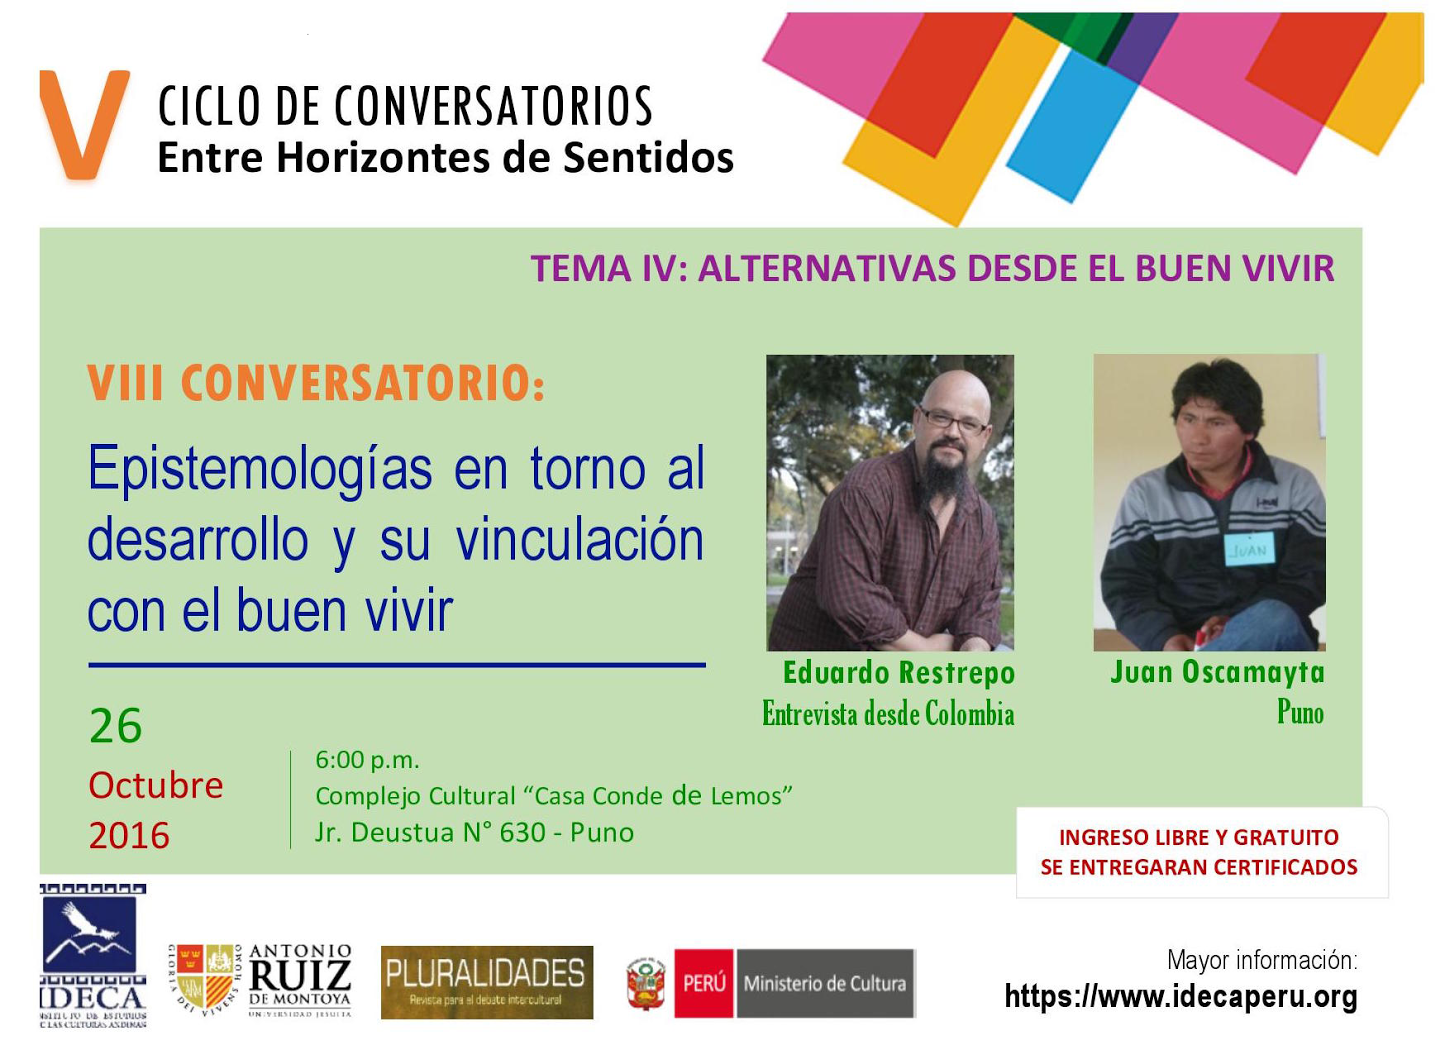 INVITACIÓN VIII CONVERSATORIO: V Ciclo de Conversatorios "Entre Horizontes de Sentido" 2016